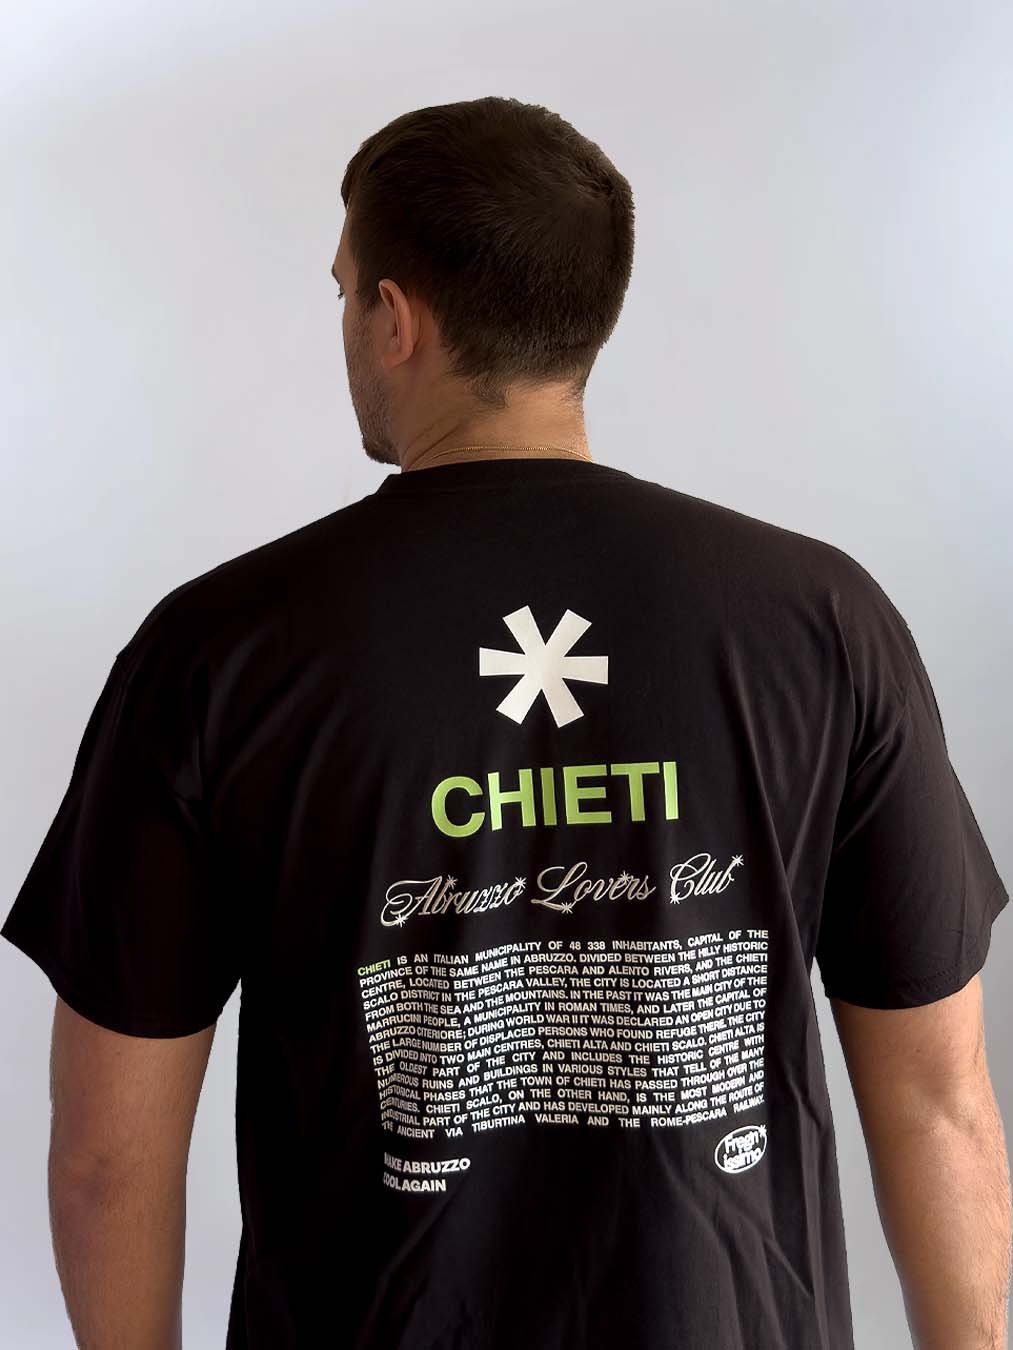 T-shirt Unisex - CHIETI - ABRUZZO LOVERS CLUB